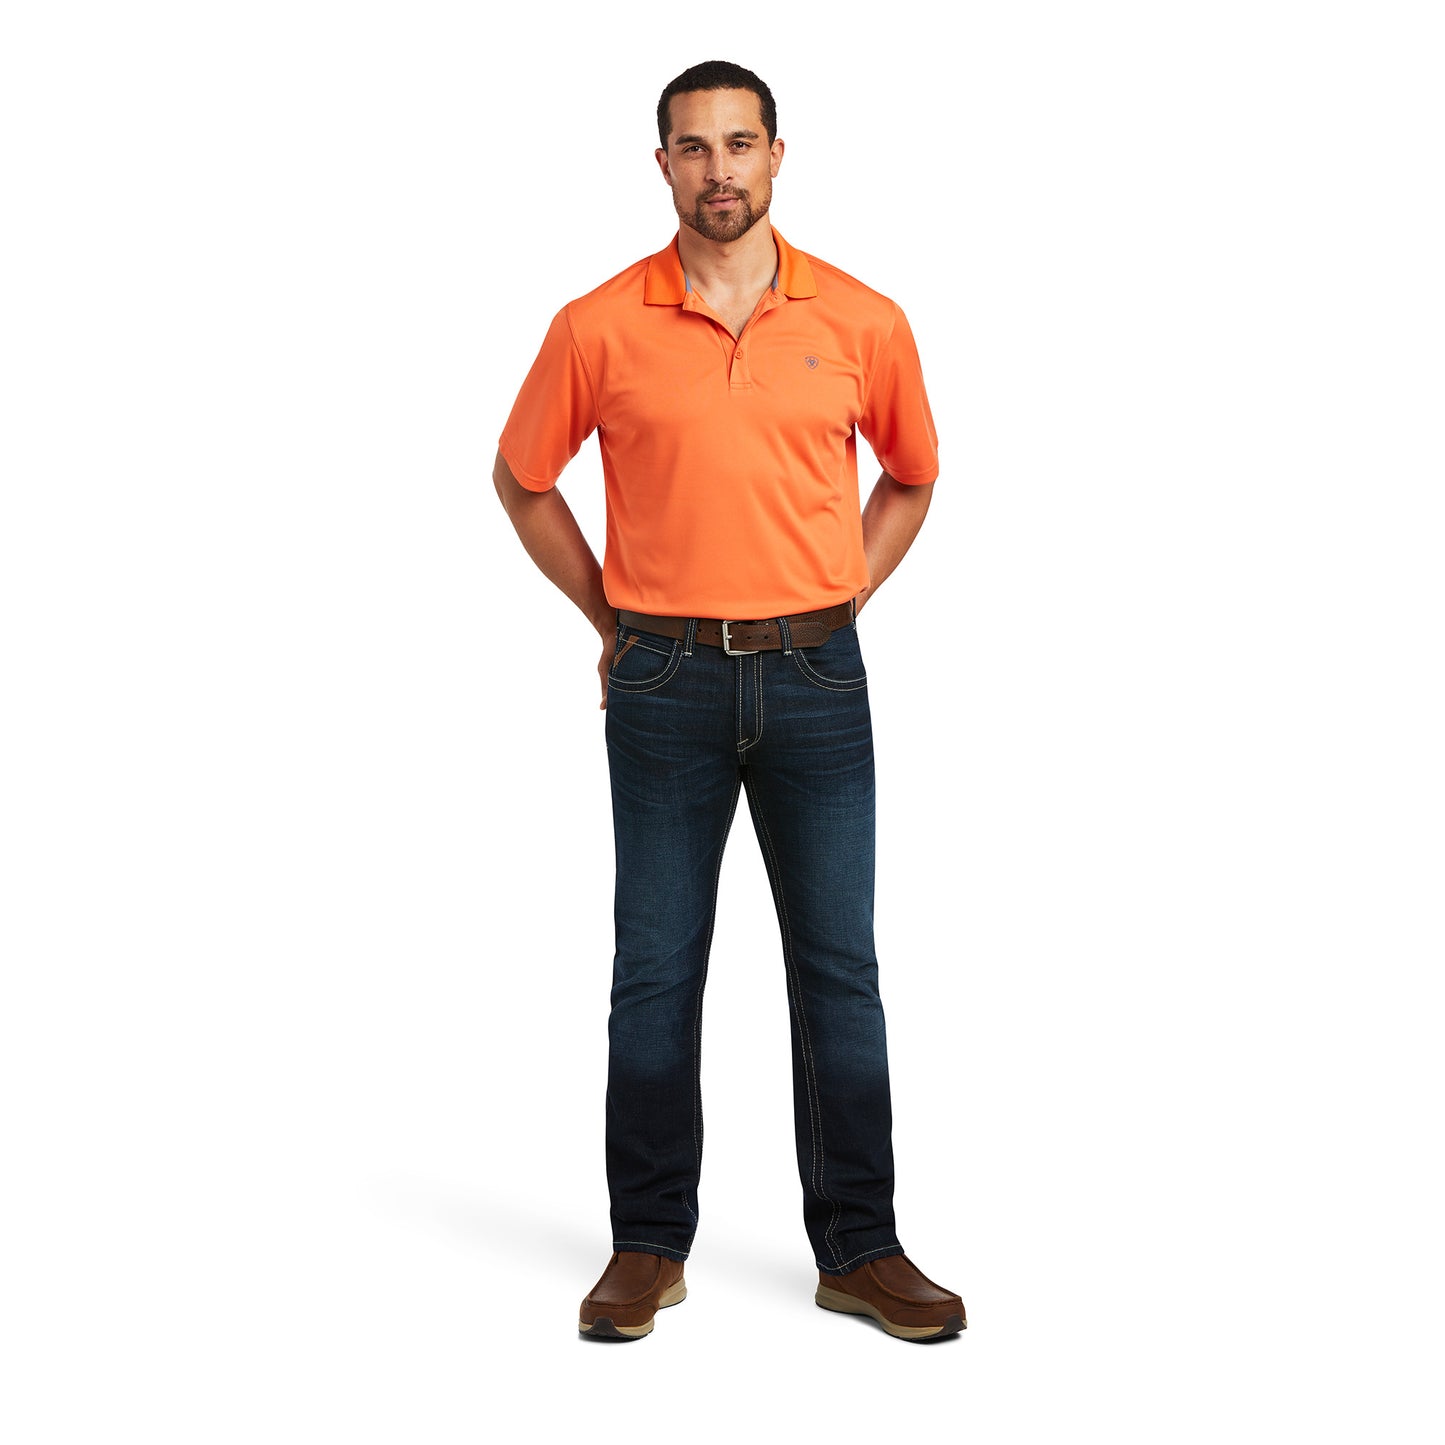 Ariat Men's Tek Polo Koi Orange Short Sleeve Shirt 10039382